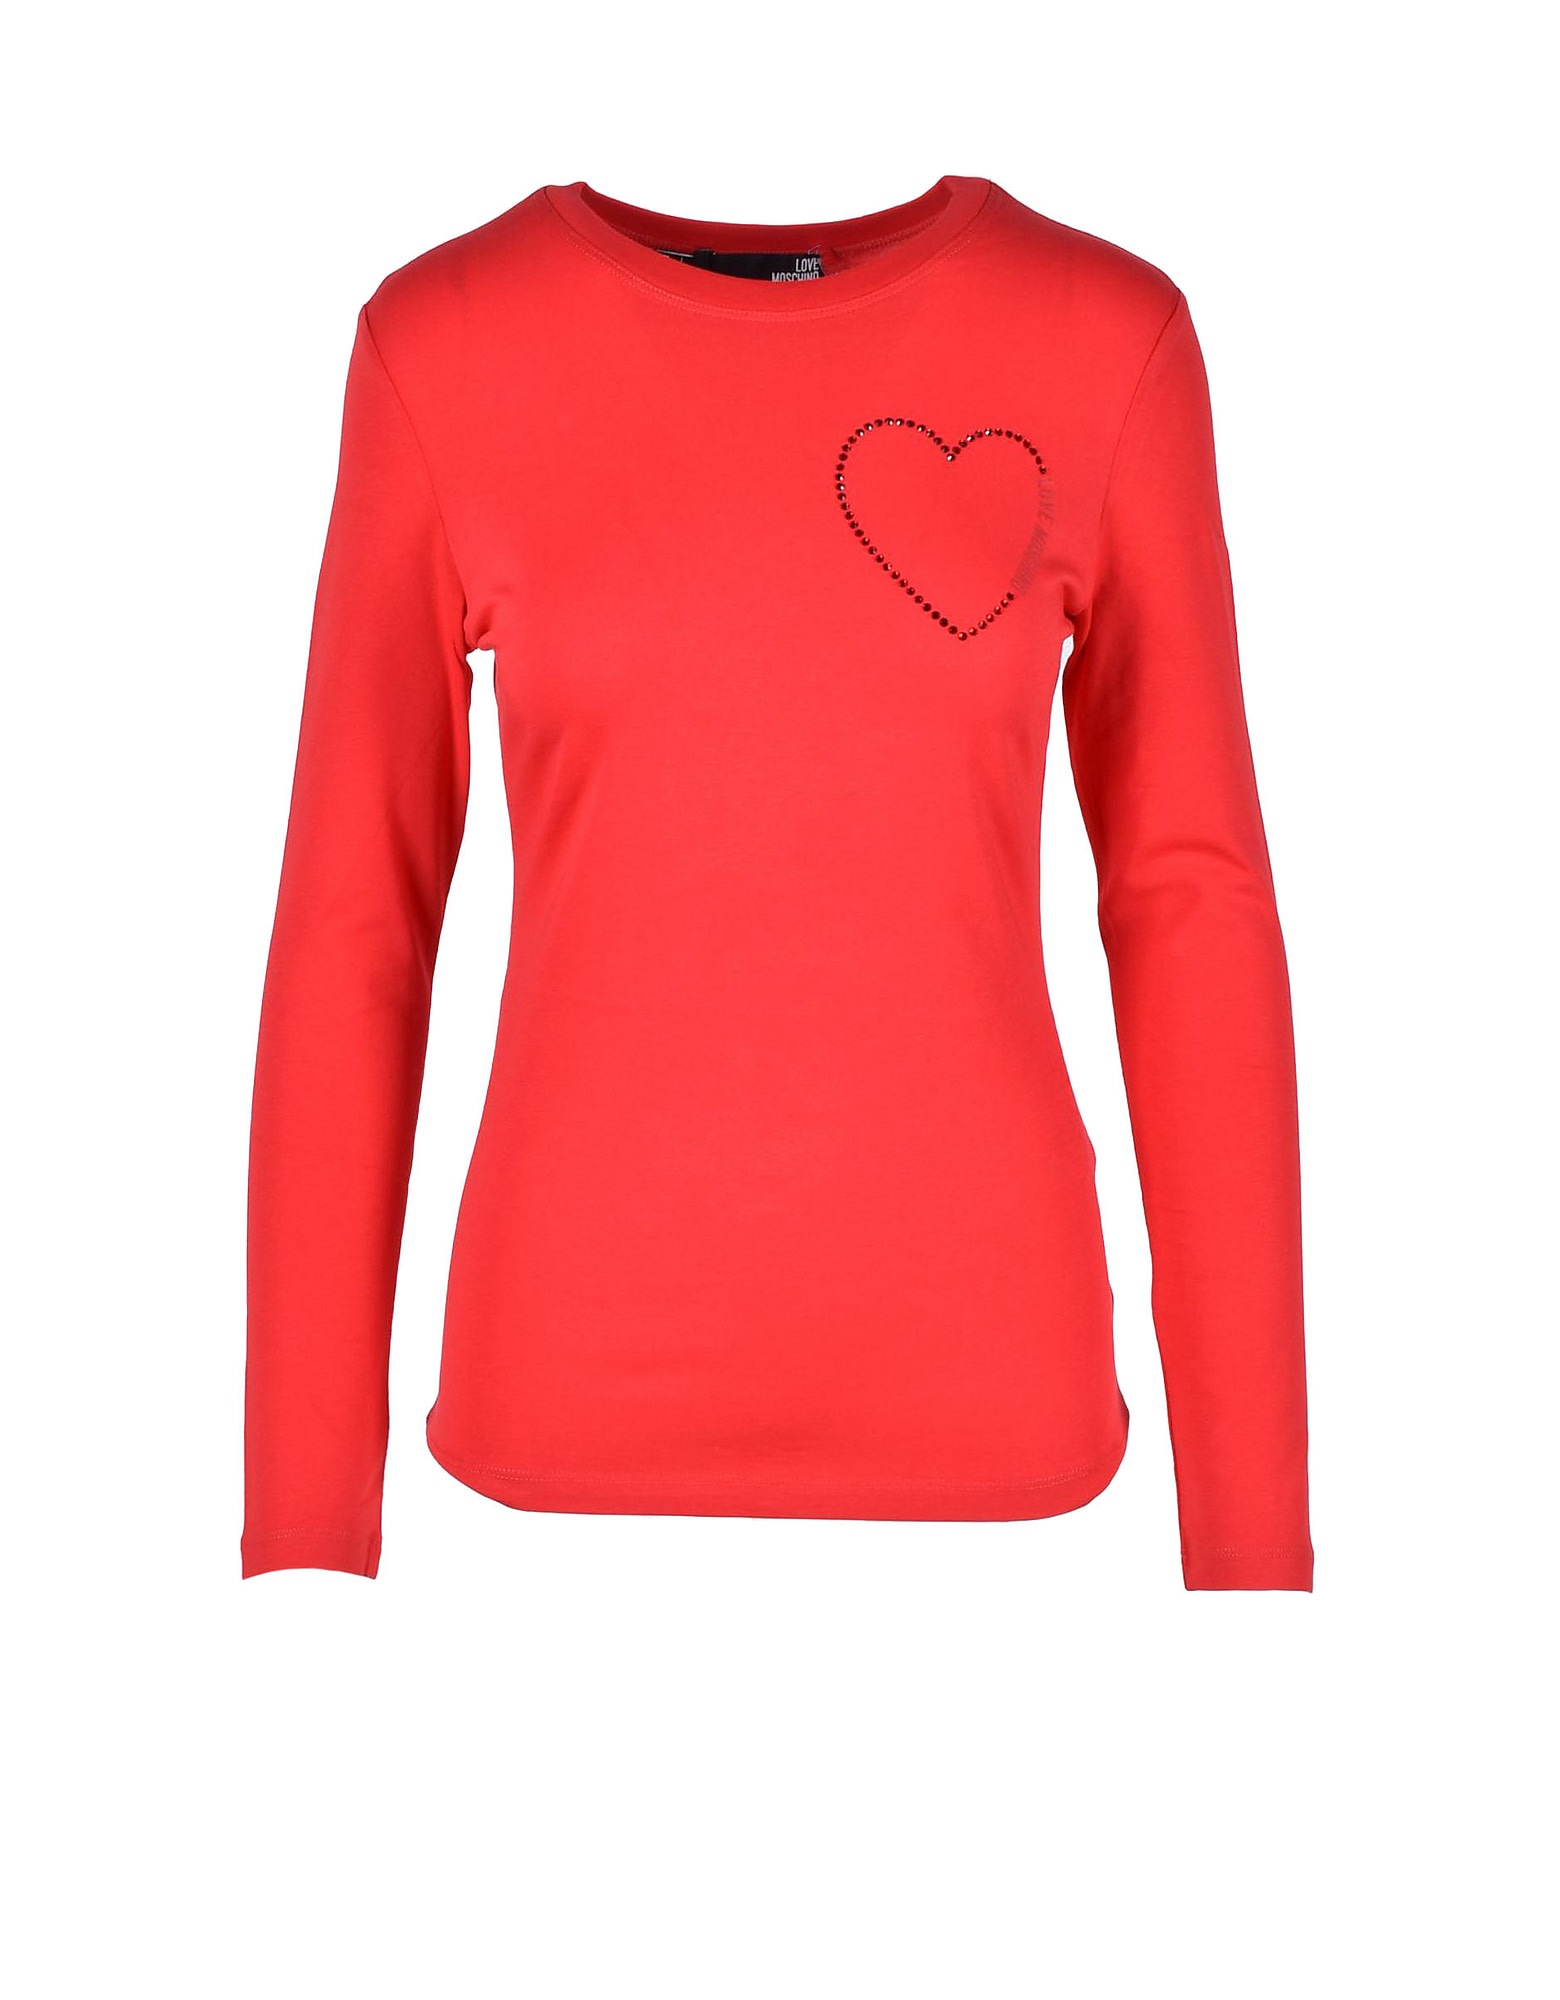 Love Moschino Womens Red T-shirt